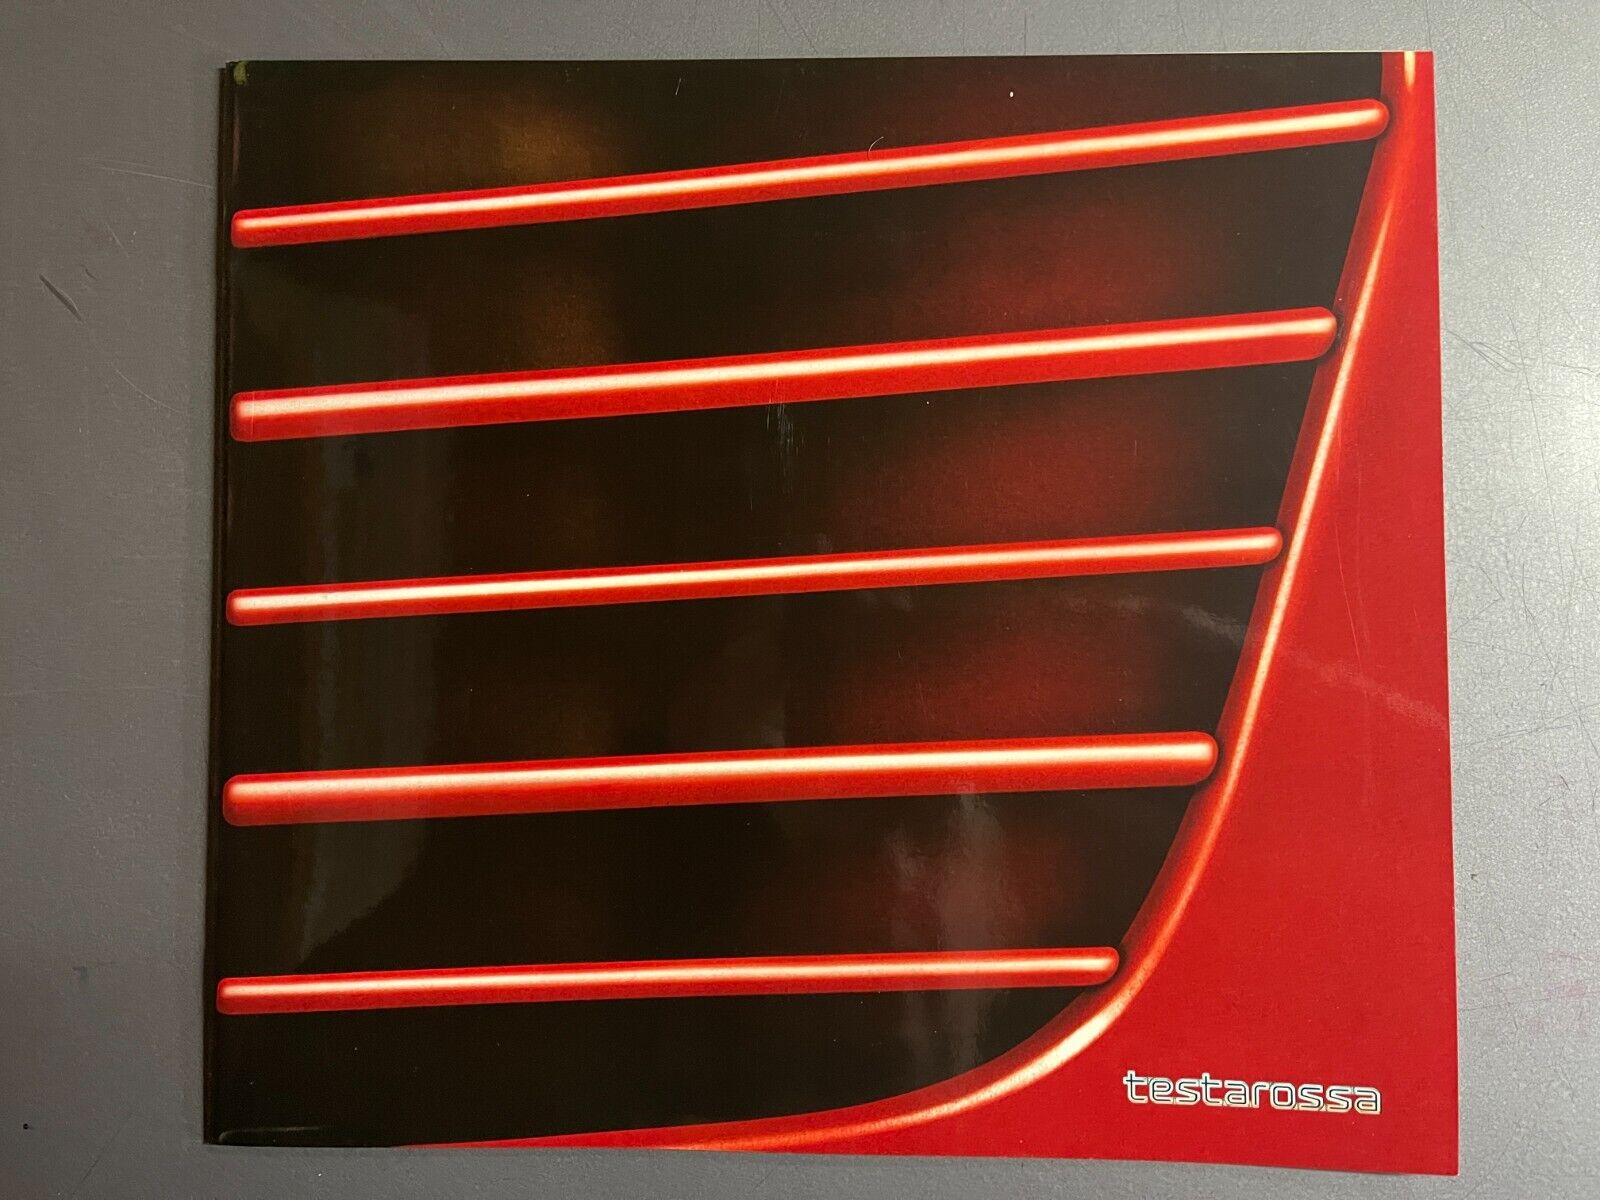 1985 Ferrari Testarossa Deluxe Brochure, English - RARE Awesome L@@K